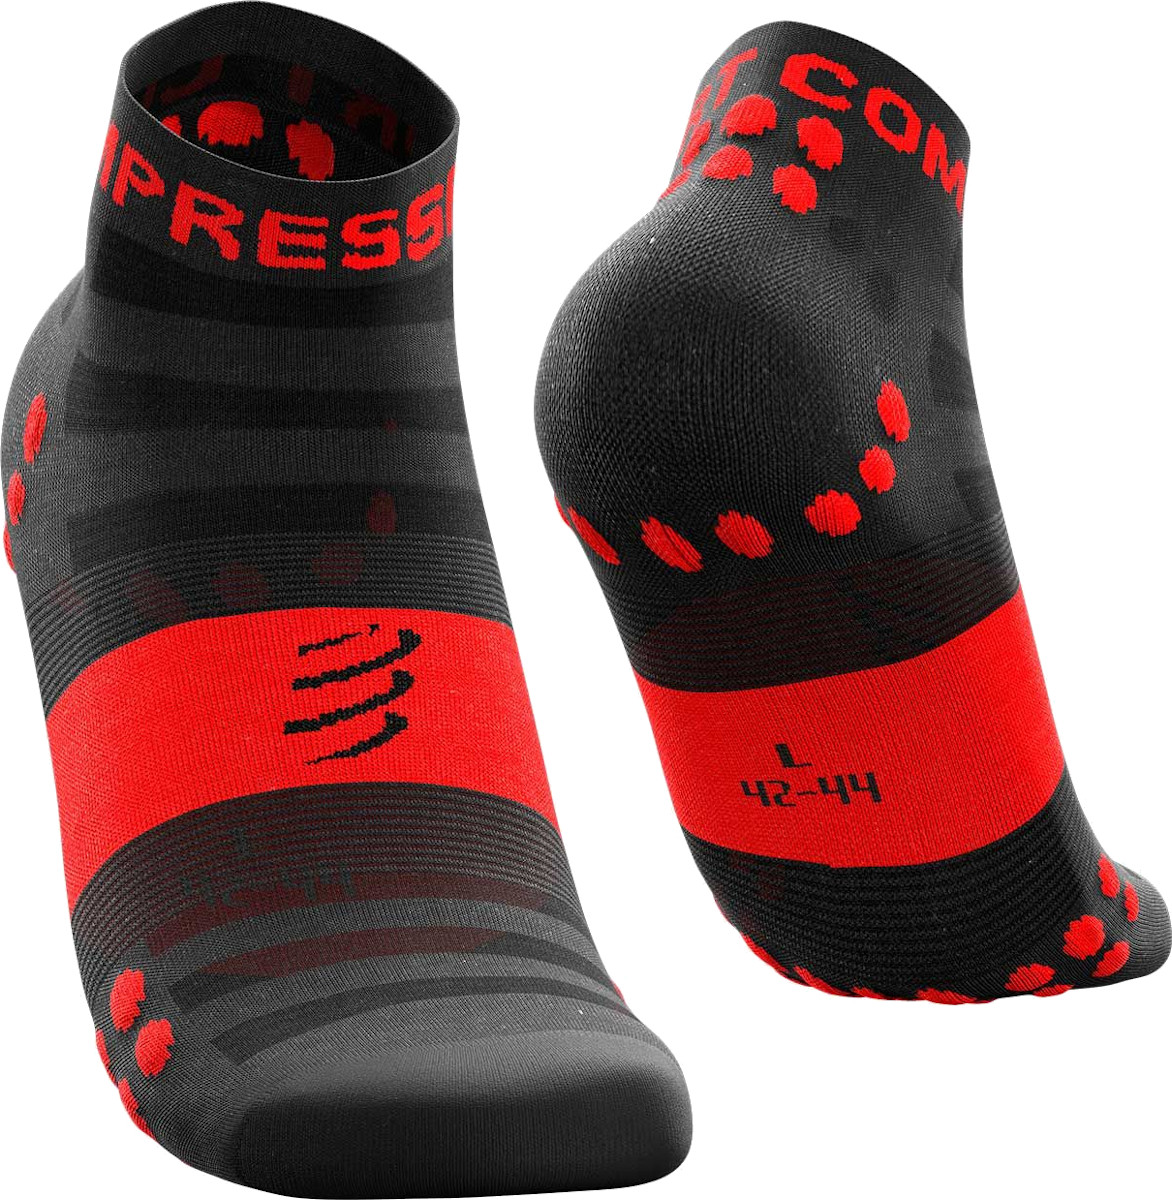 Běžecké nízké ponožky Compressport Pro Racing V3 Ultralight